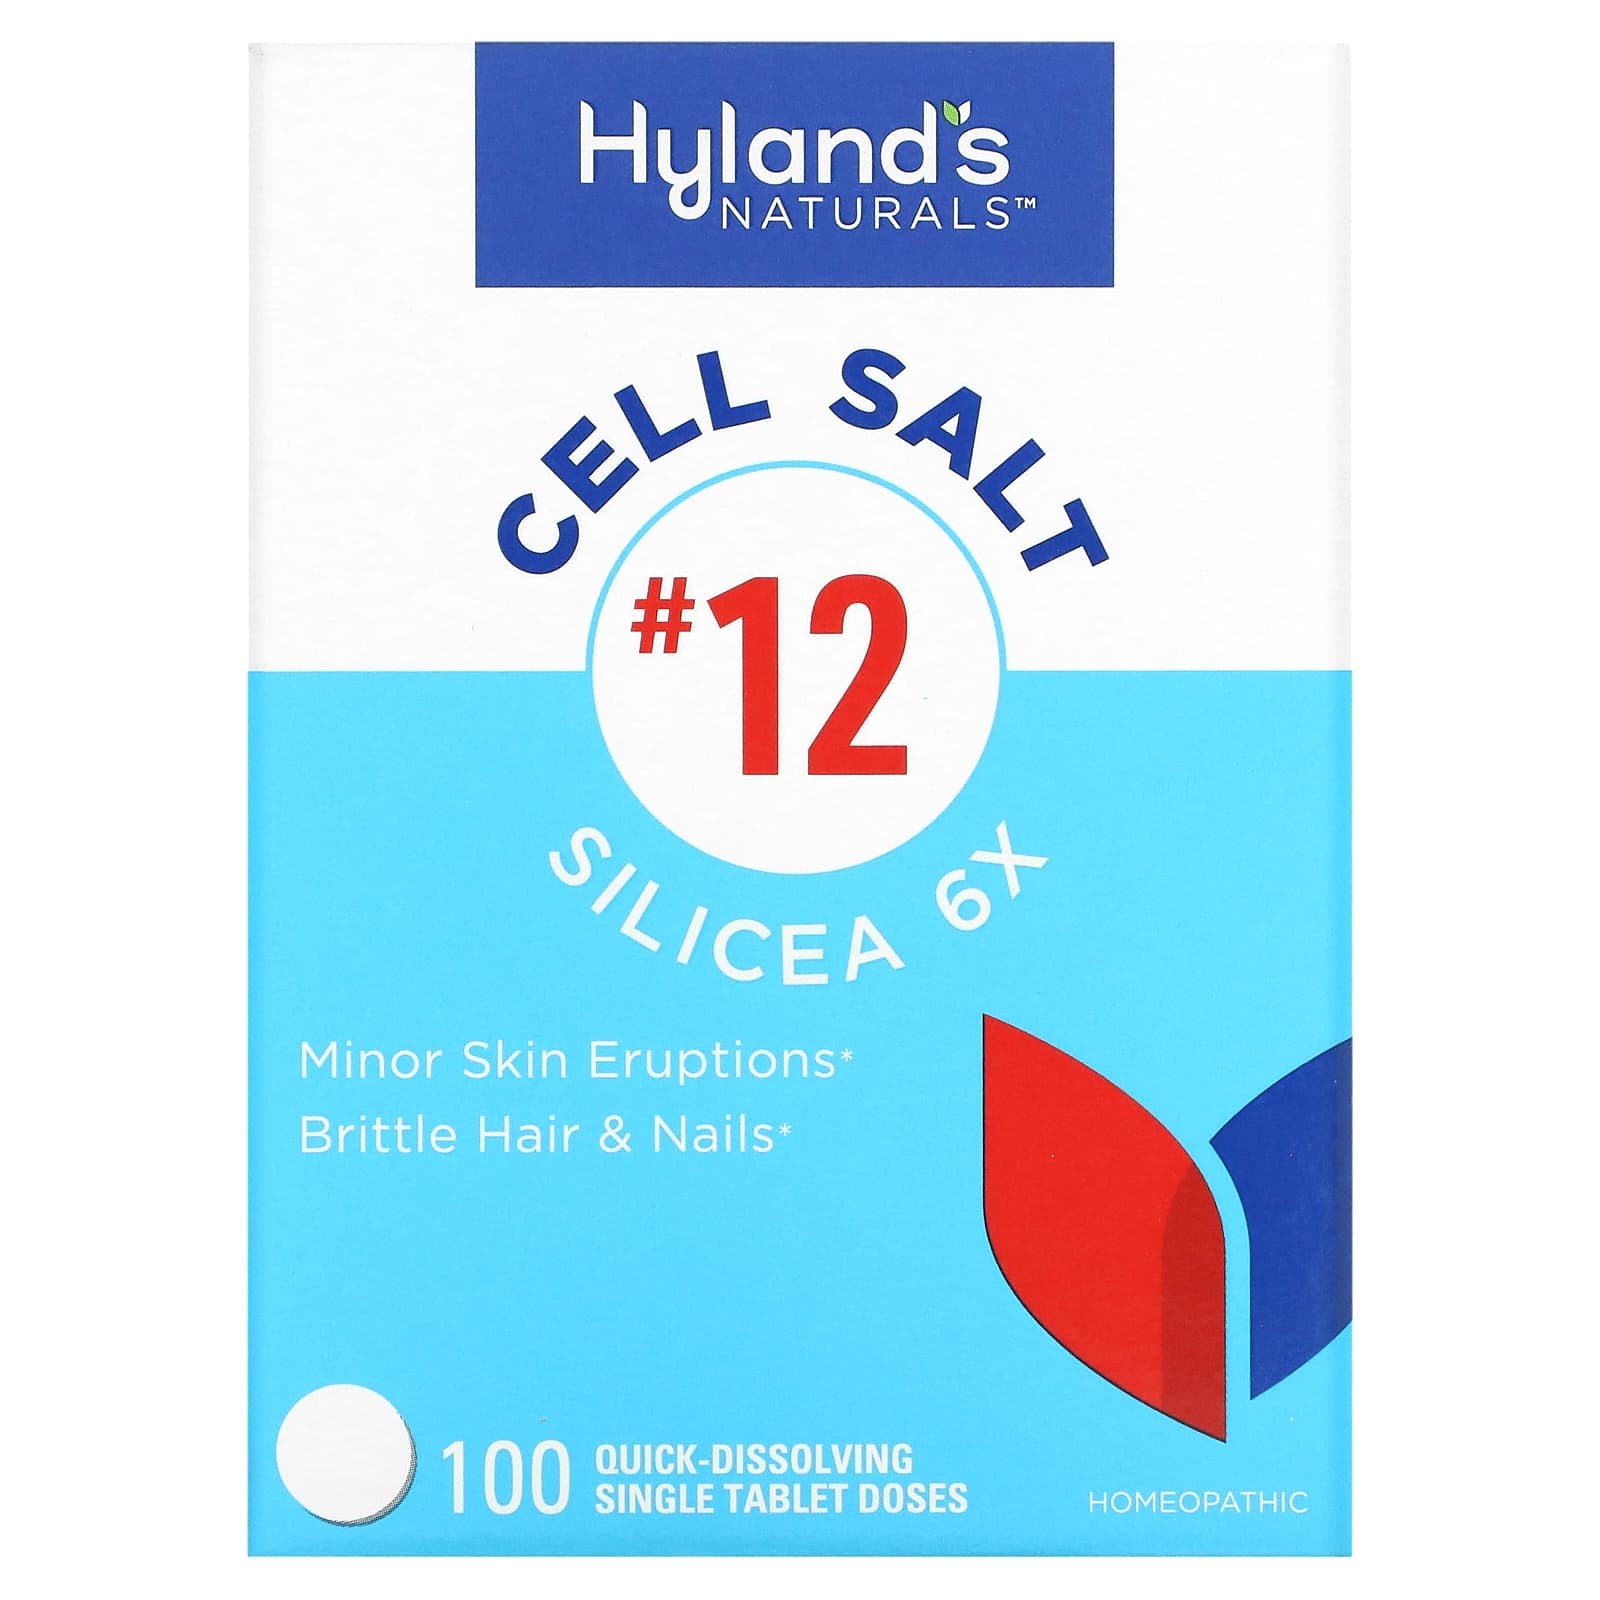 Клеточная Соль №12 / Силицея 6X Hyland's, 100 быстрорастворимых таблеток hyland s cell salt 8 mag phos 6x 100 быстрорастворимых таблеток